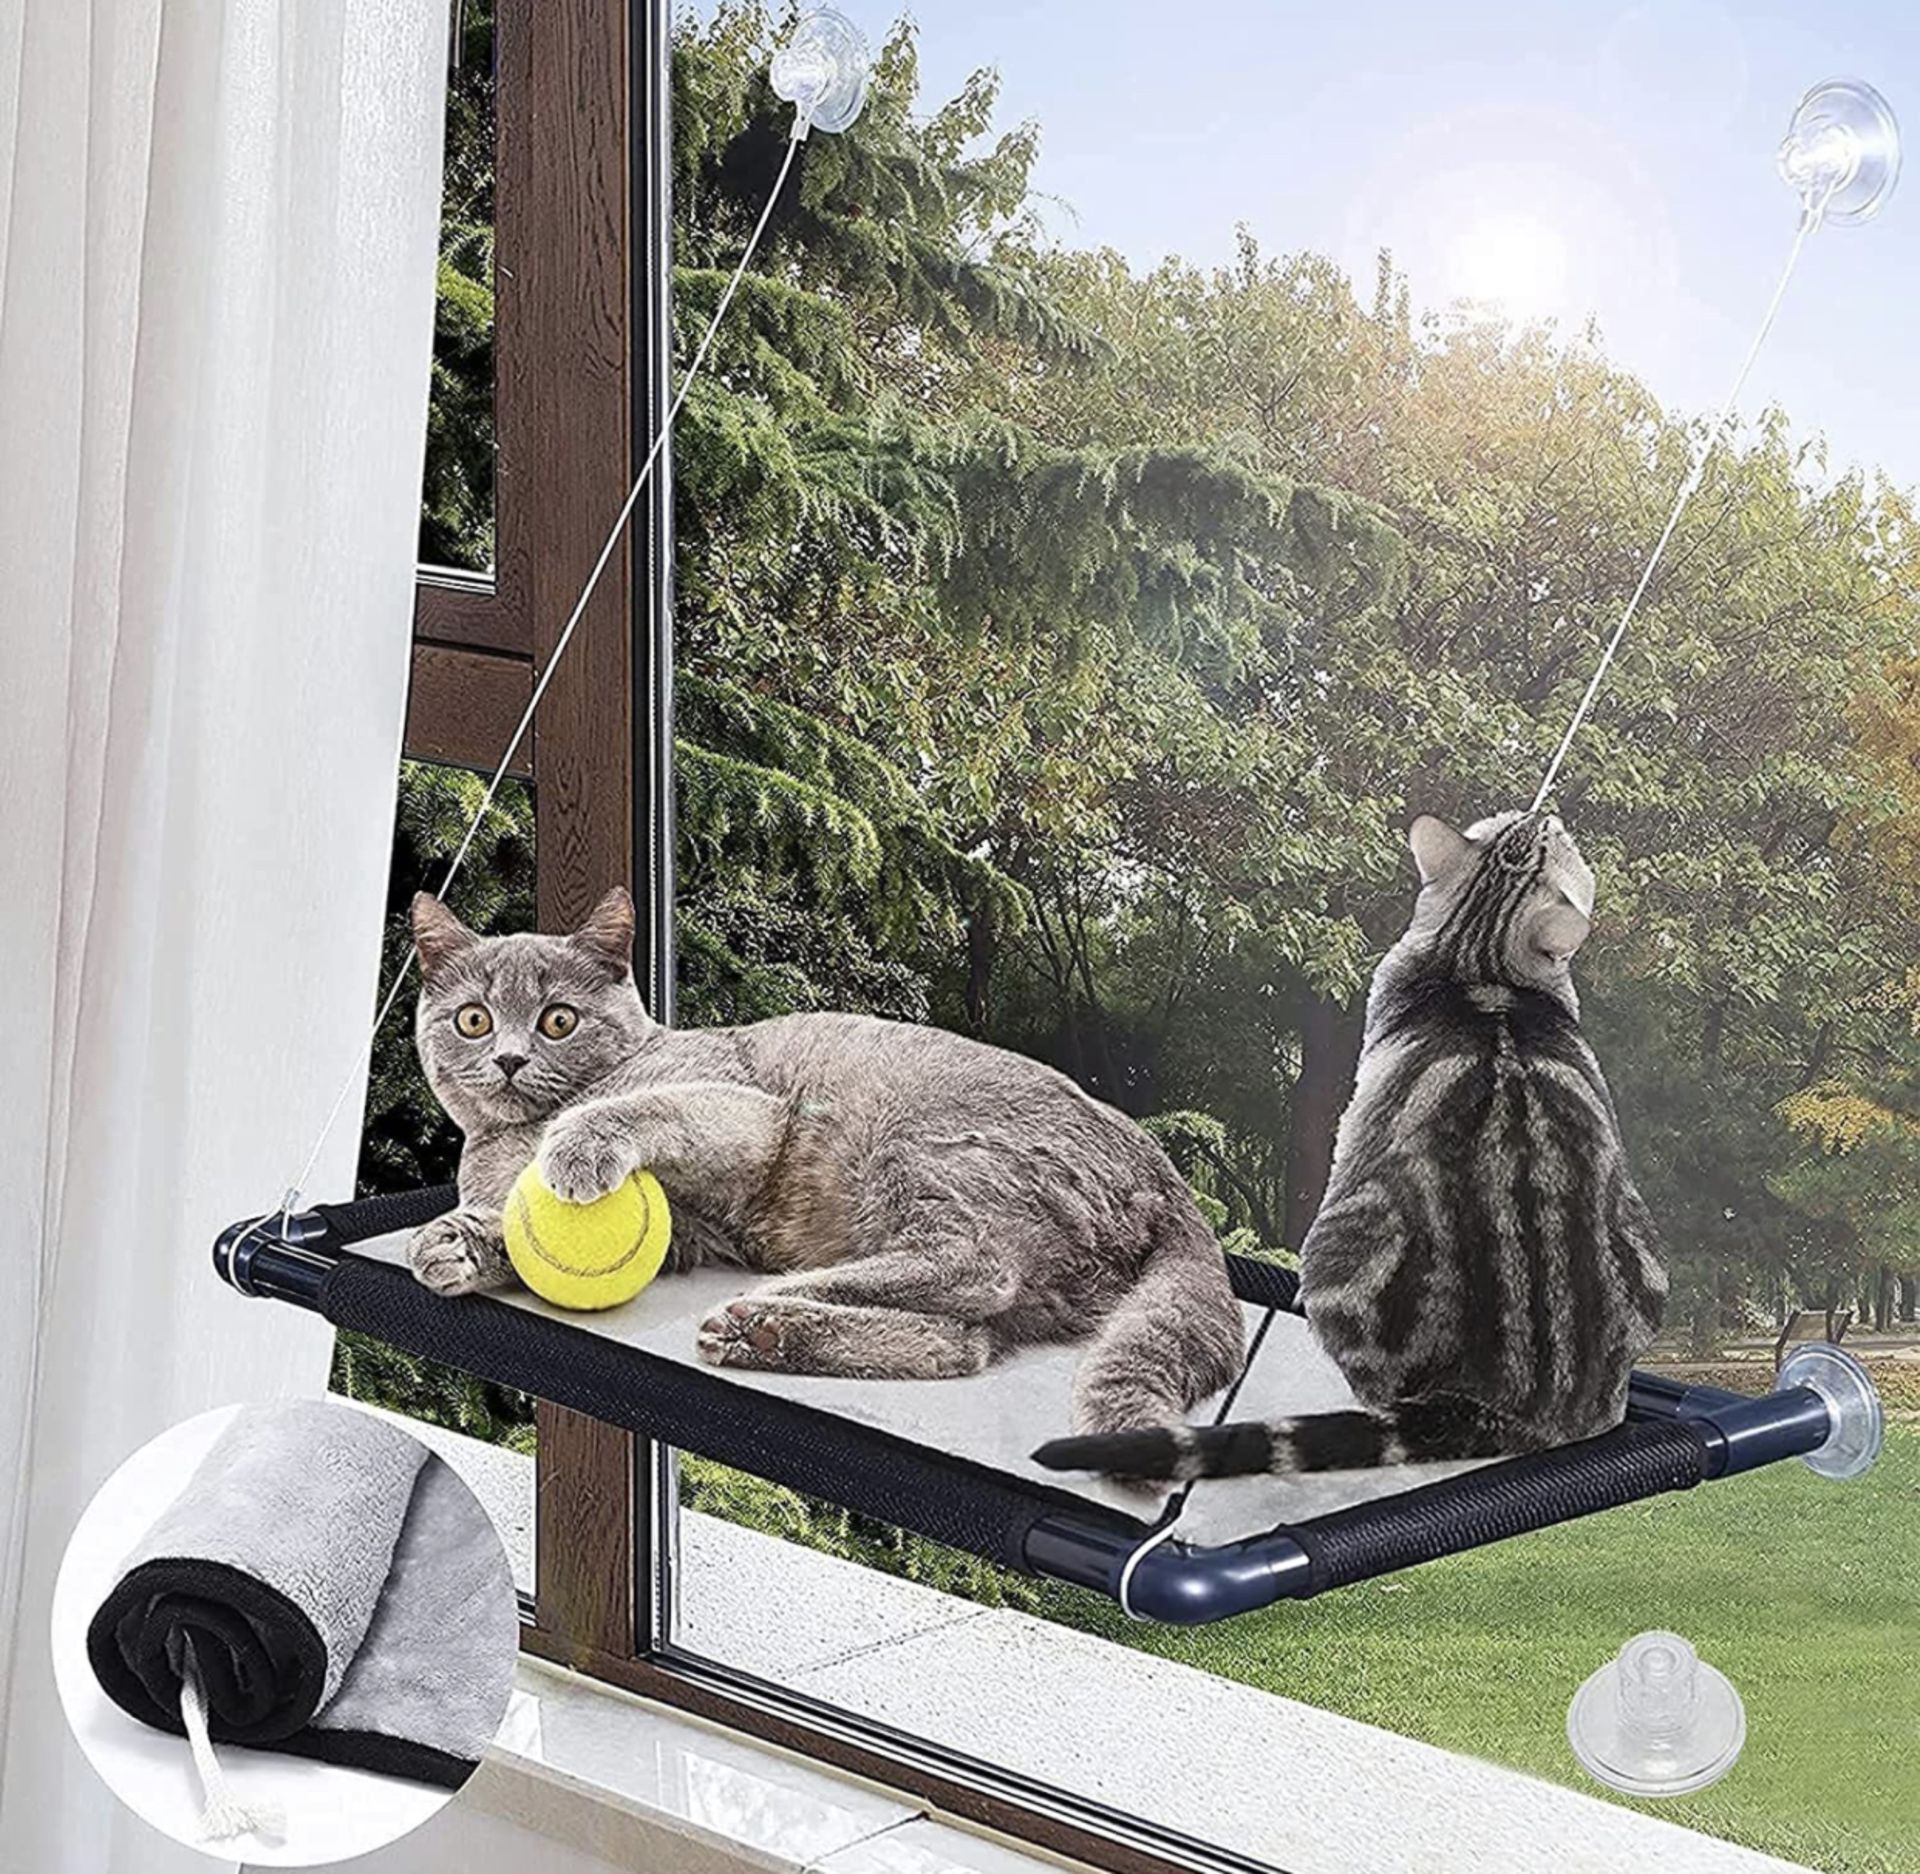 Mqupin Cat Hammock Window Resting Shelf